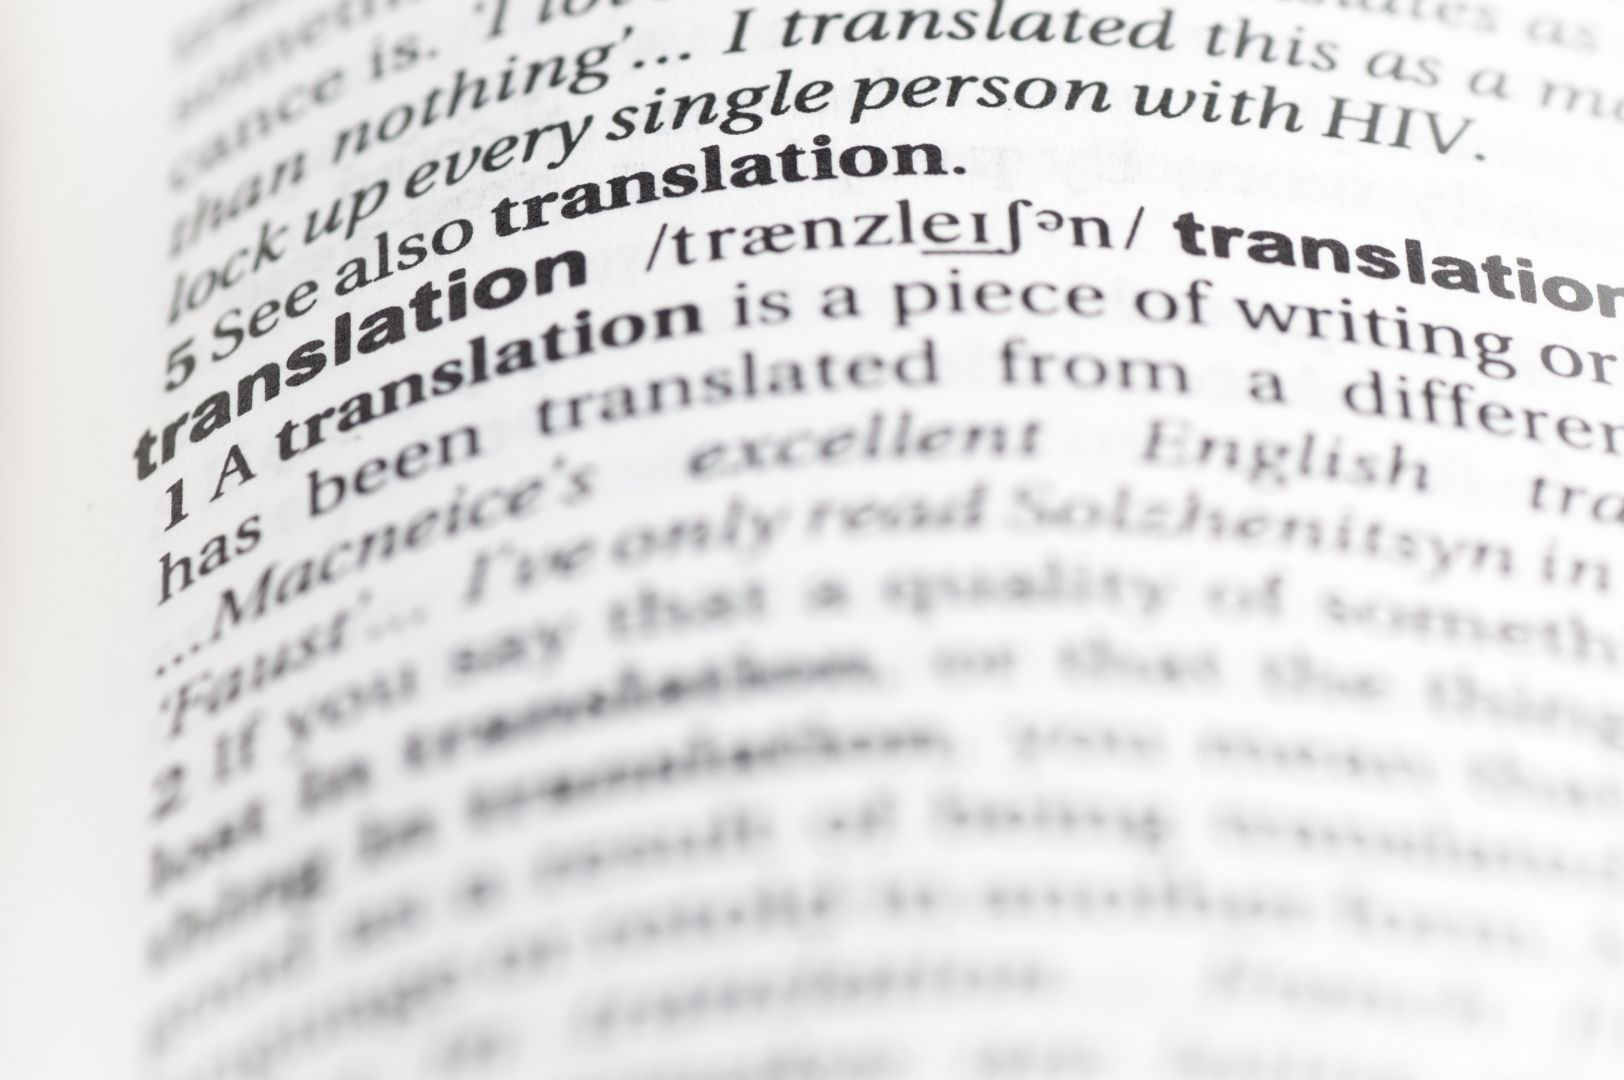 Poptávka na překlad textů z angličtiny do němčiny (Překladatelské služby) - Hodonín